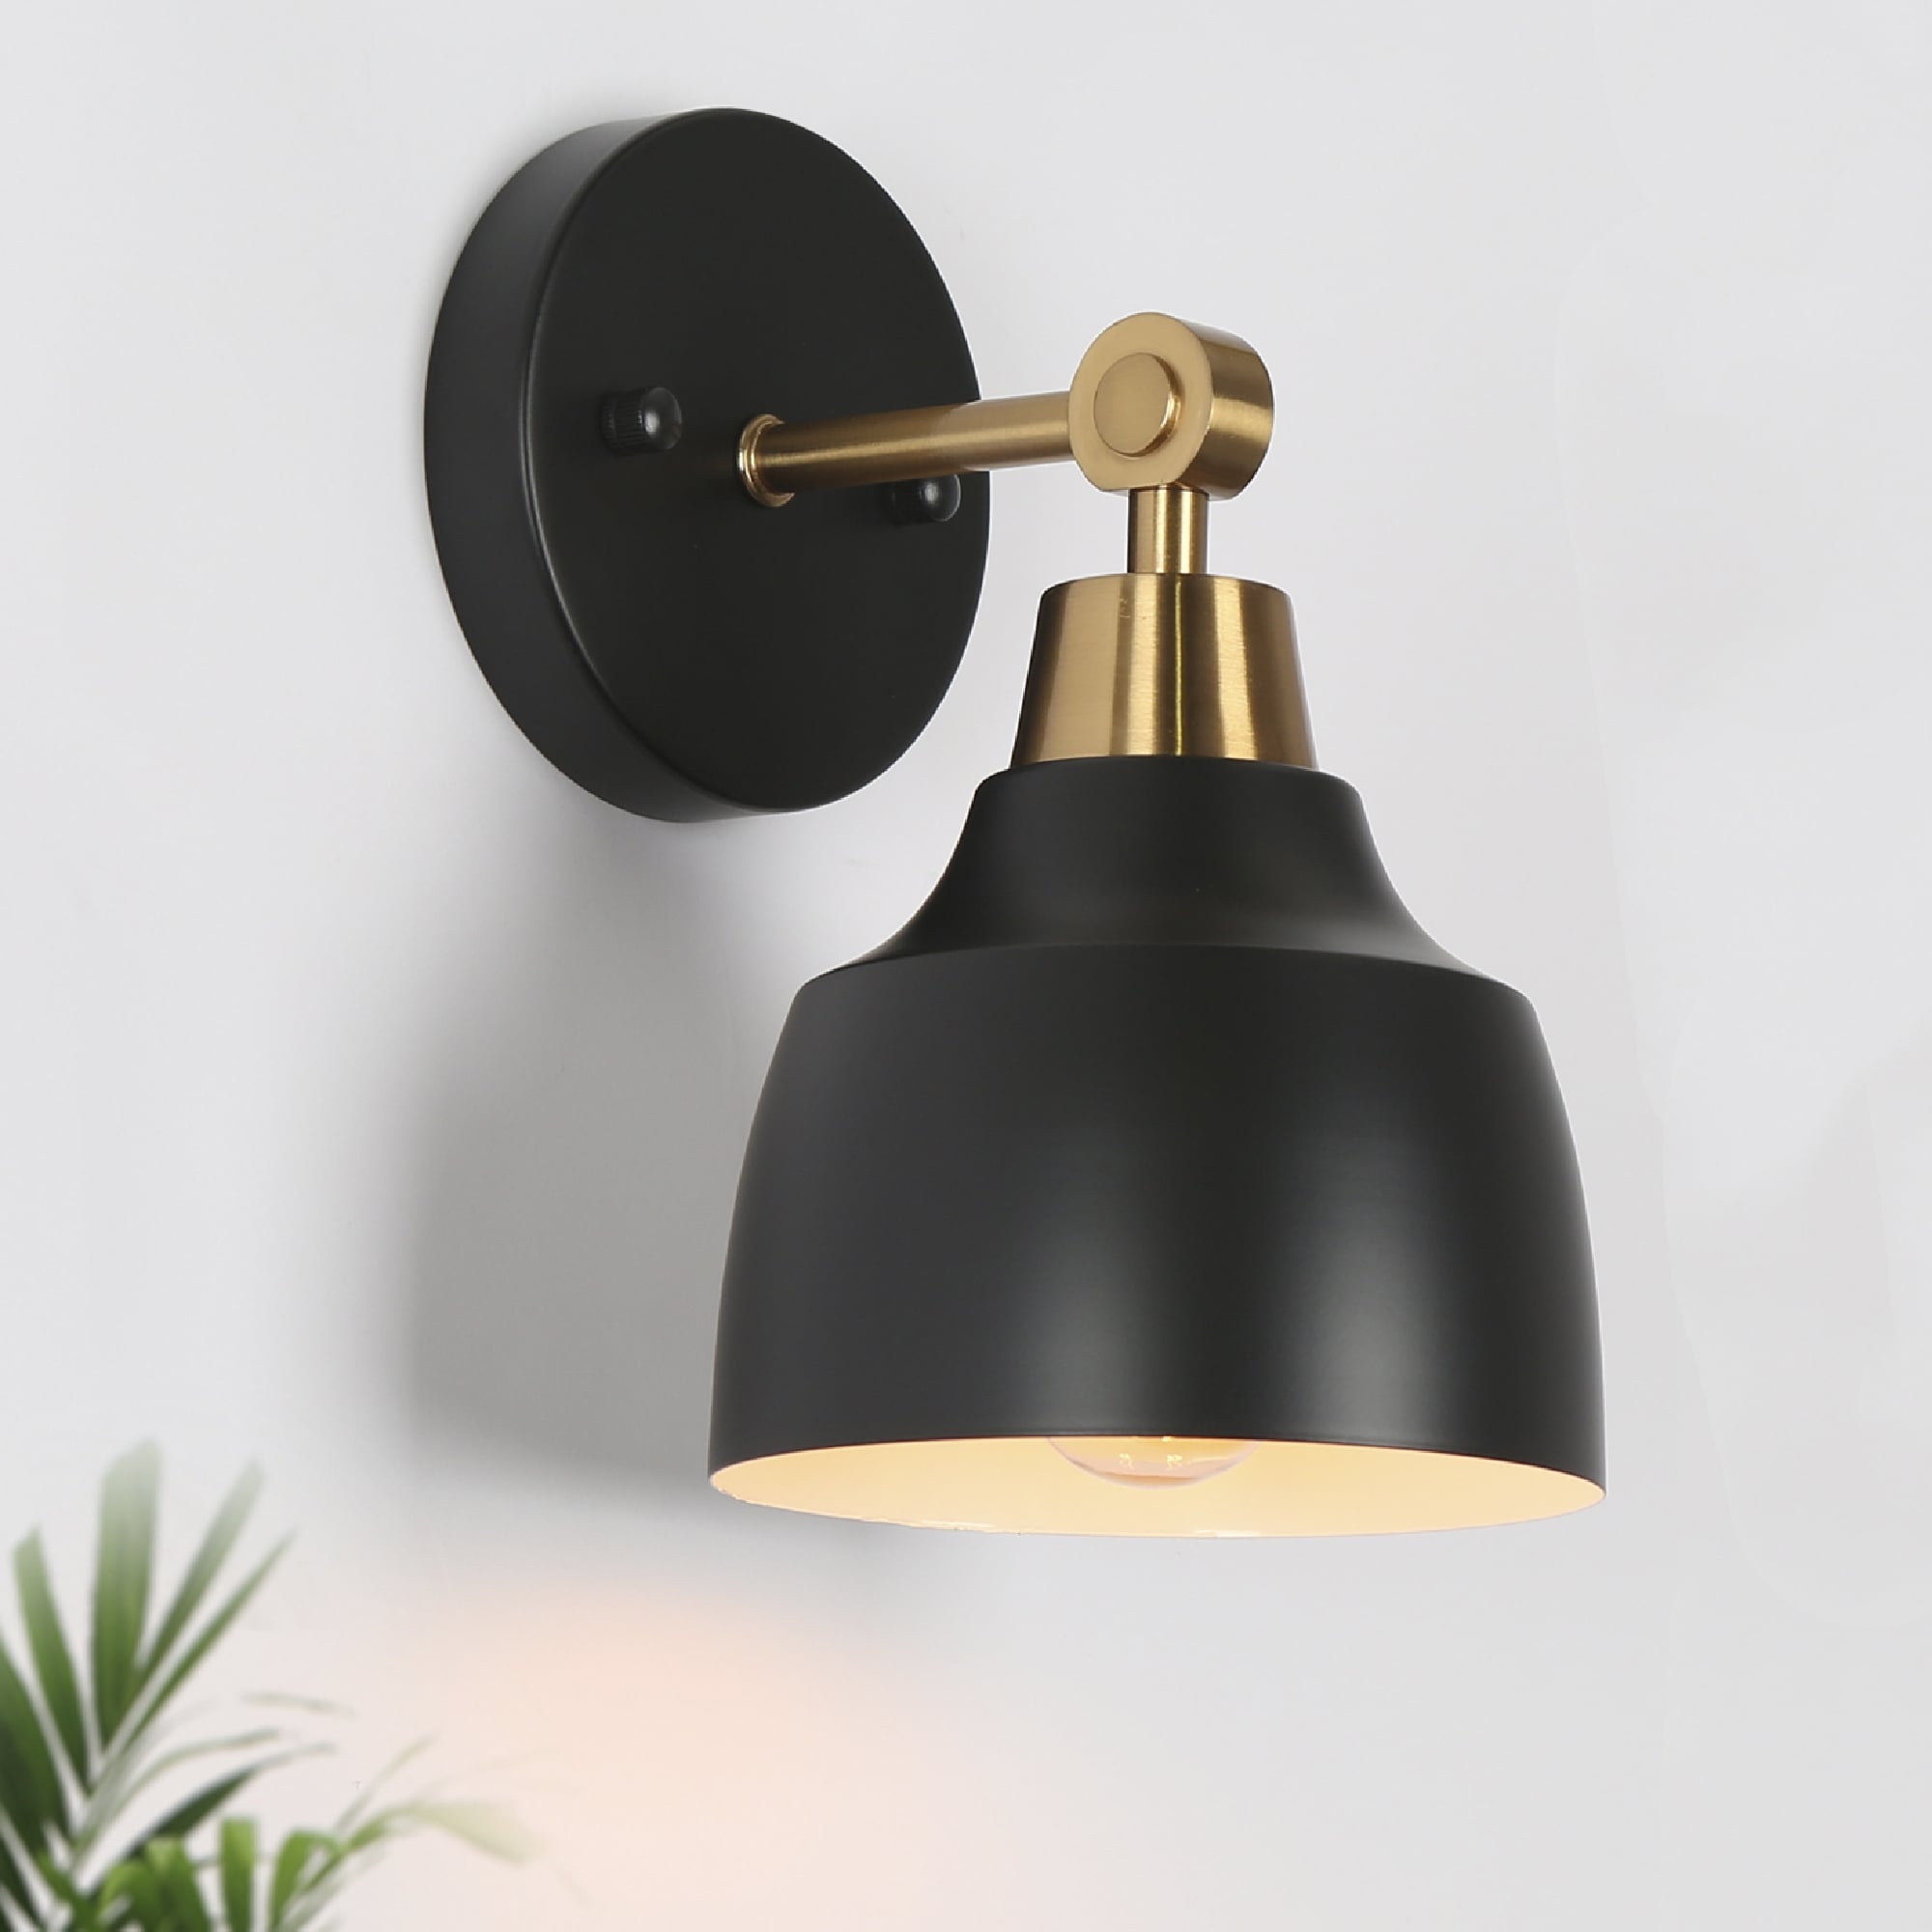 Antique Brass LED Wall Light Fixture Modern Wall Sconce Lamp Bird Design Bedroom 